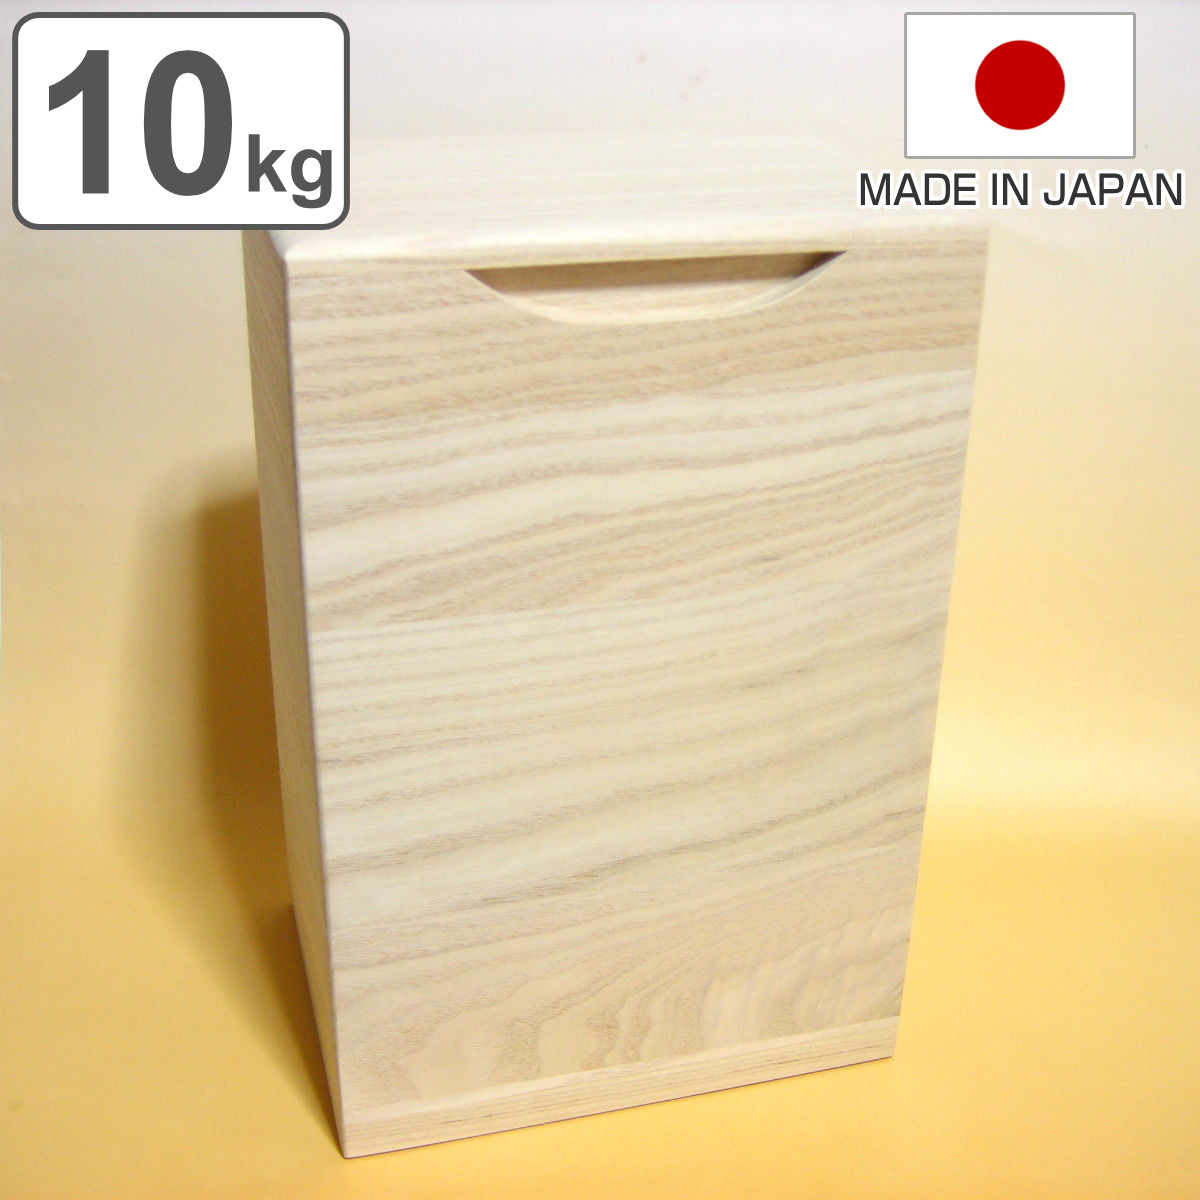 米びつ 桐製 10kg 縦型 無地